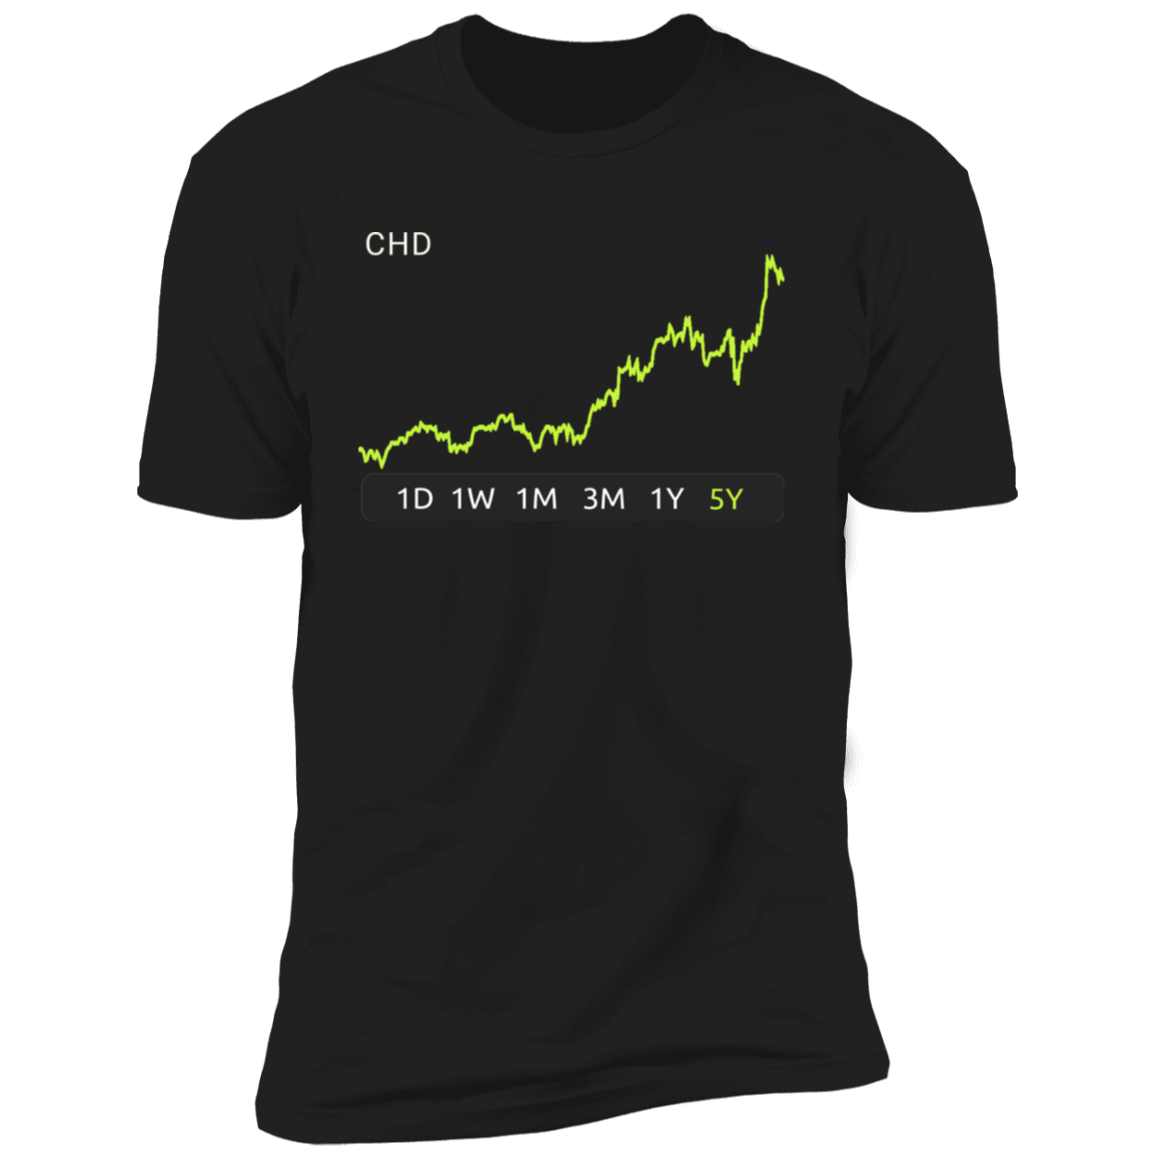 CHD Stock 5y Premium T-Shirt